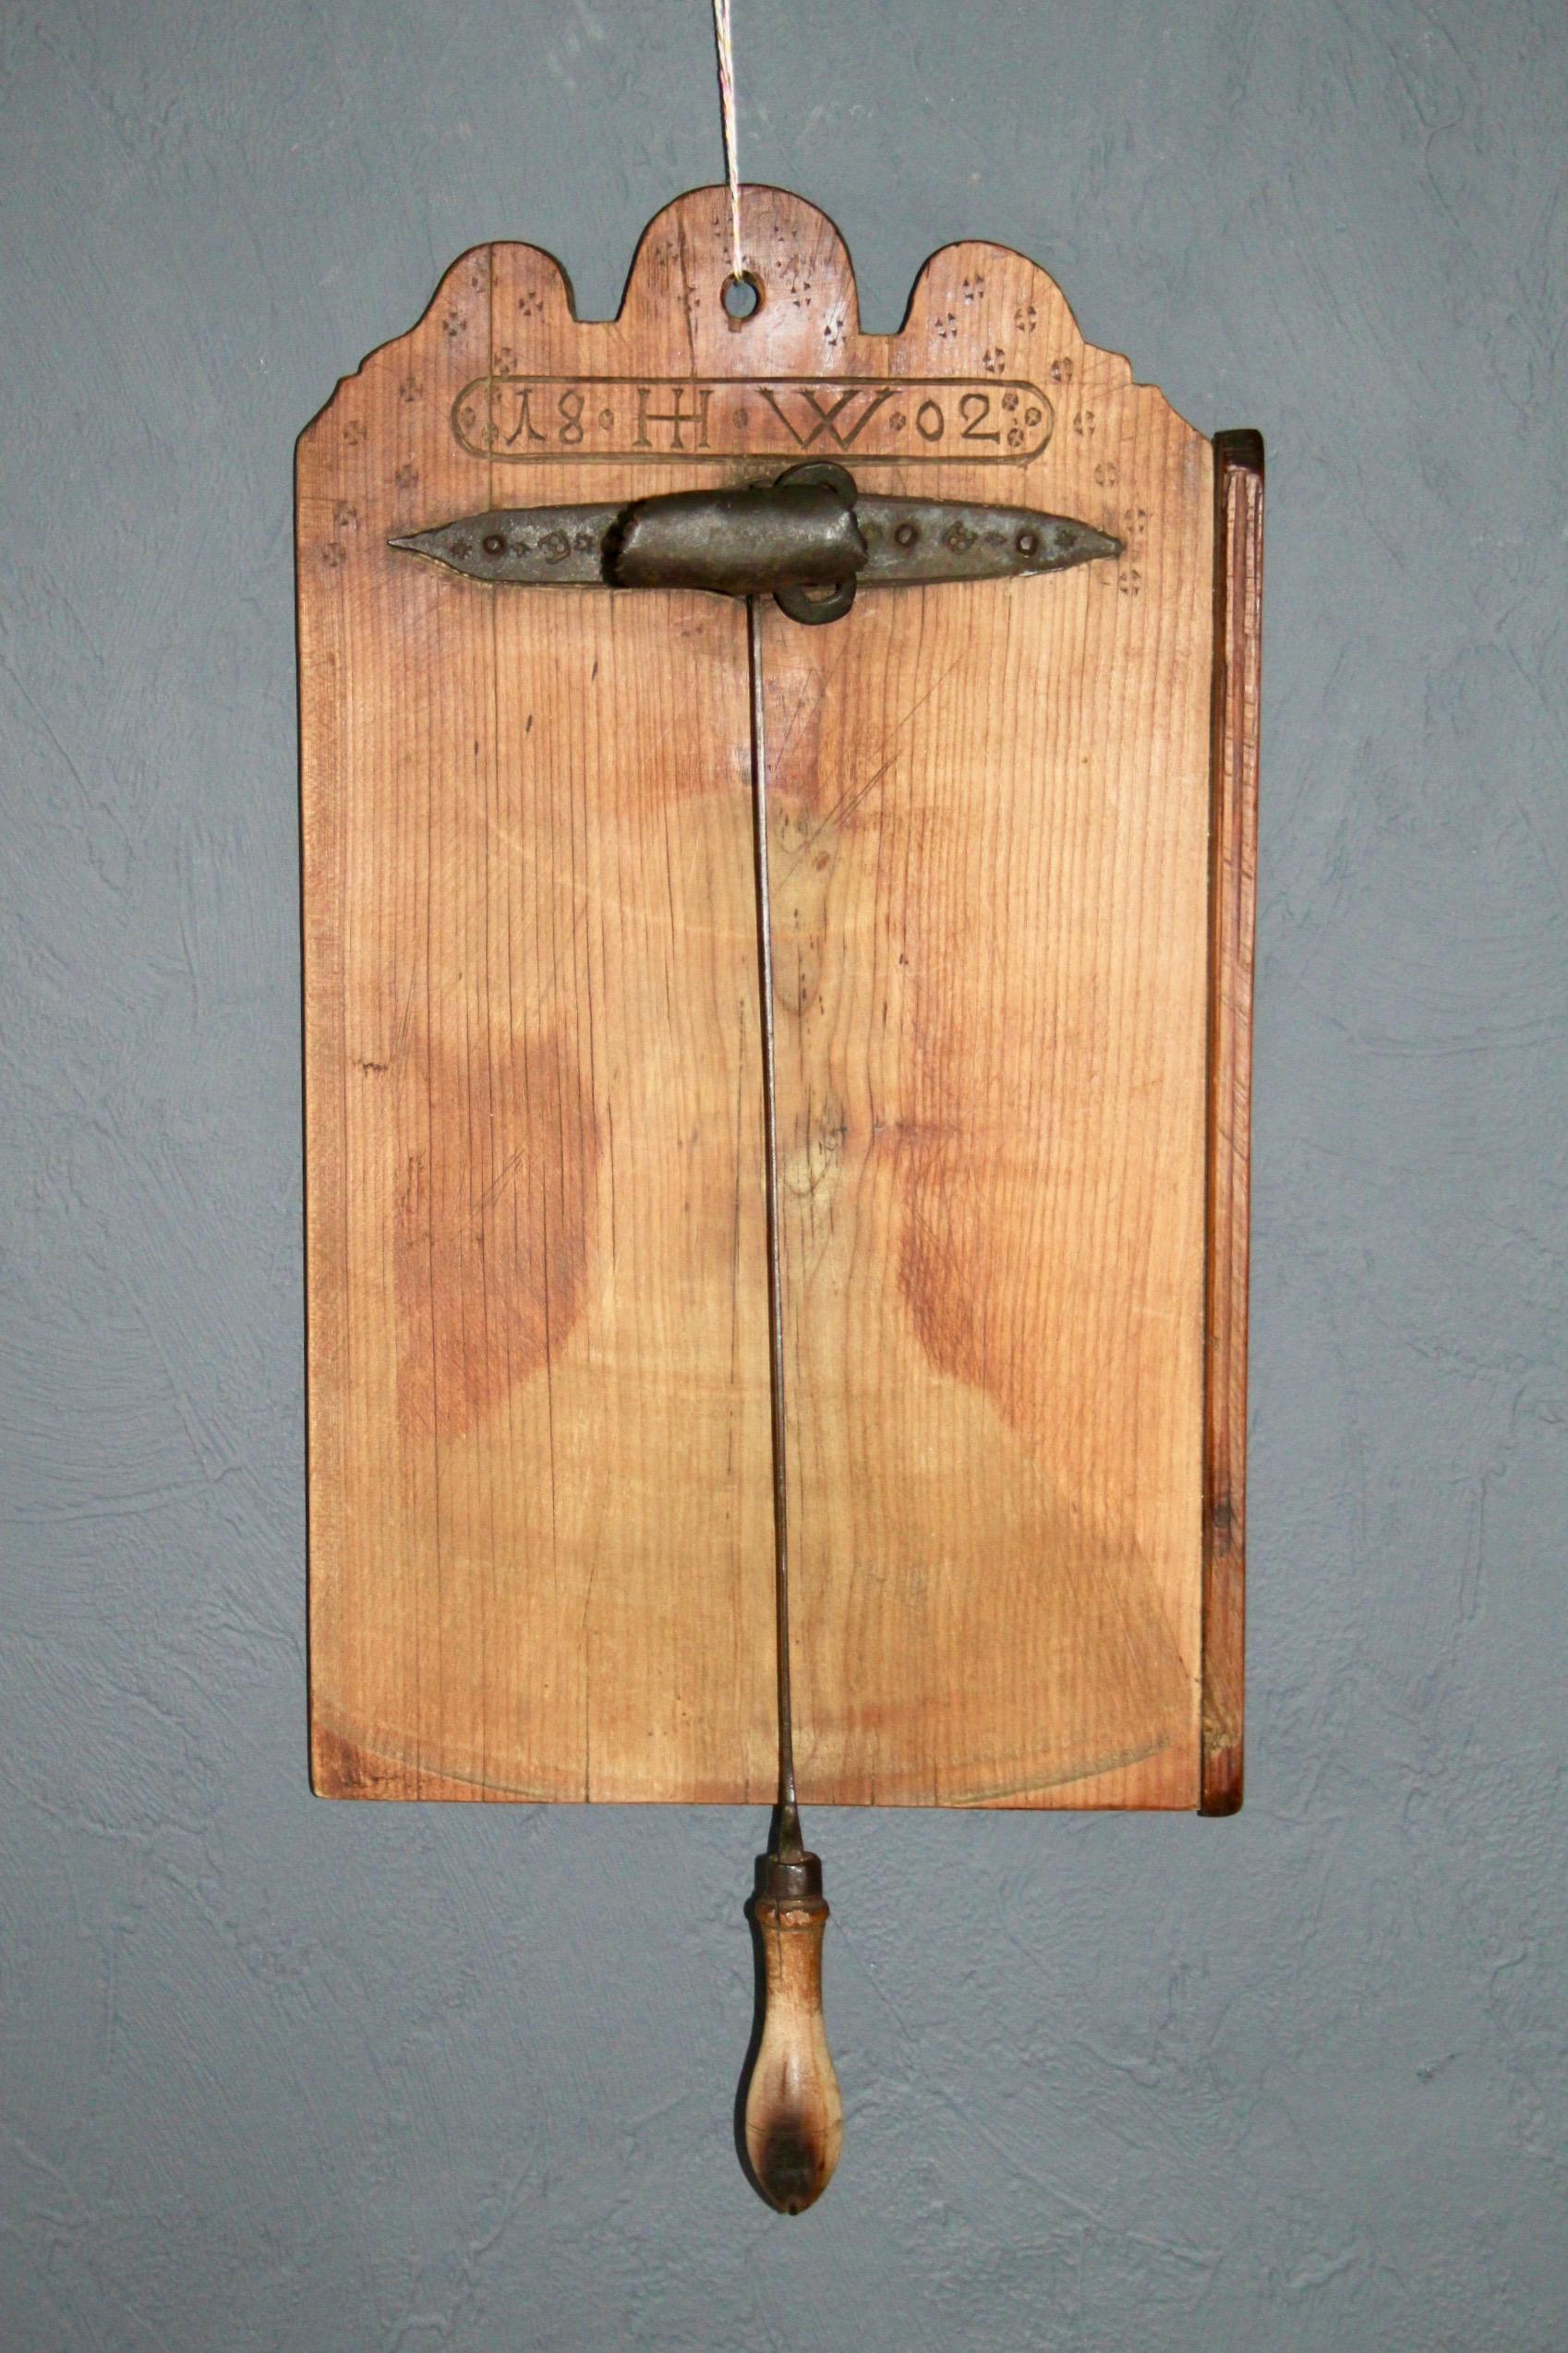 Planche à pain suisse du 19e siècle, datée de 1802 et portant le monogramme H L 